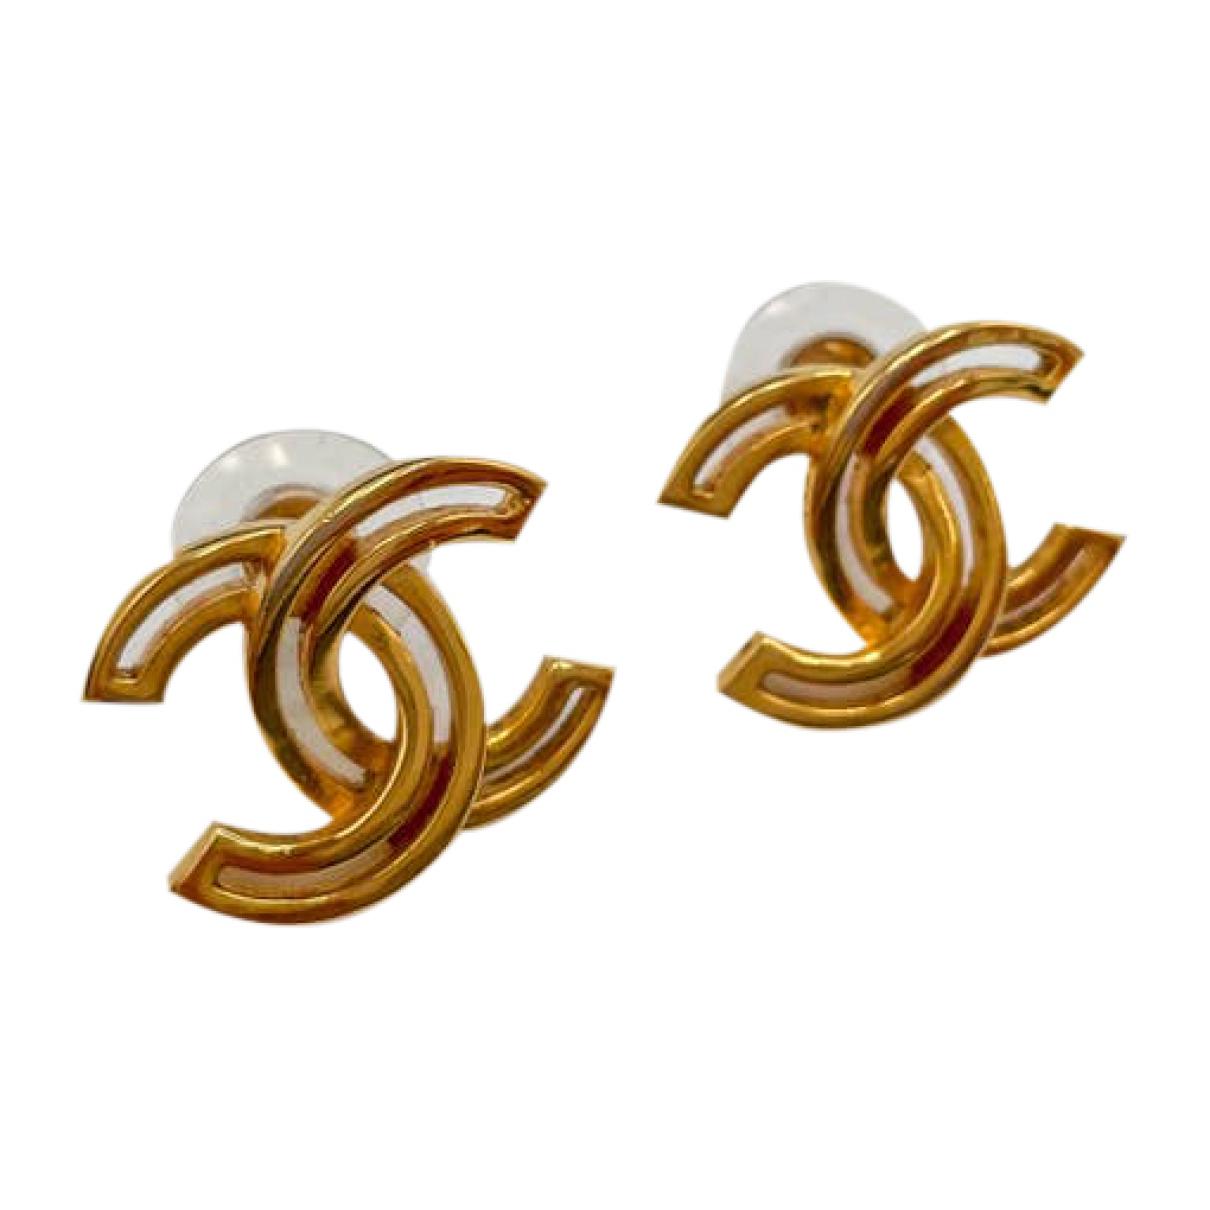 Cc earrings Chanel Gold in Metal - 24403344